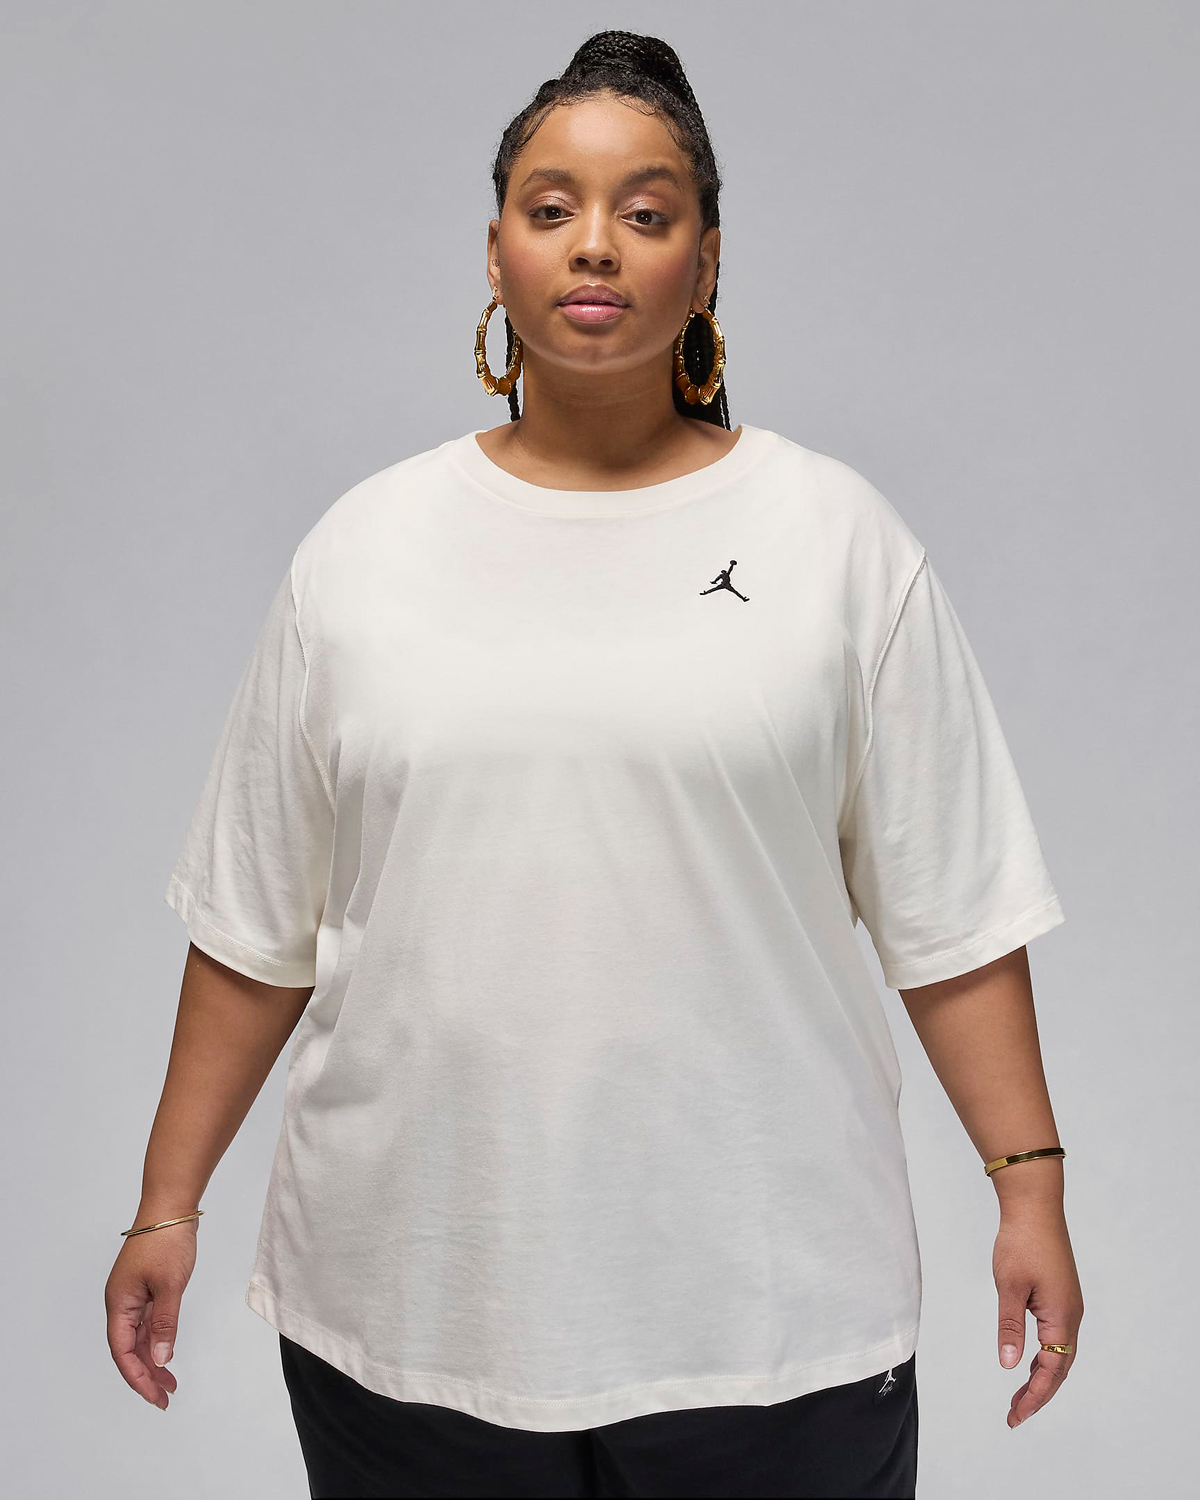 Jordan-Essentials-Womens-T-Shirt-Sail-Plus-Size